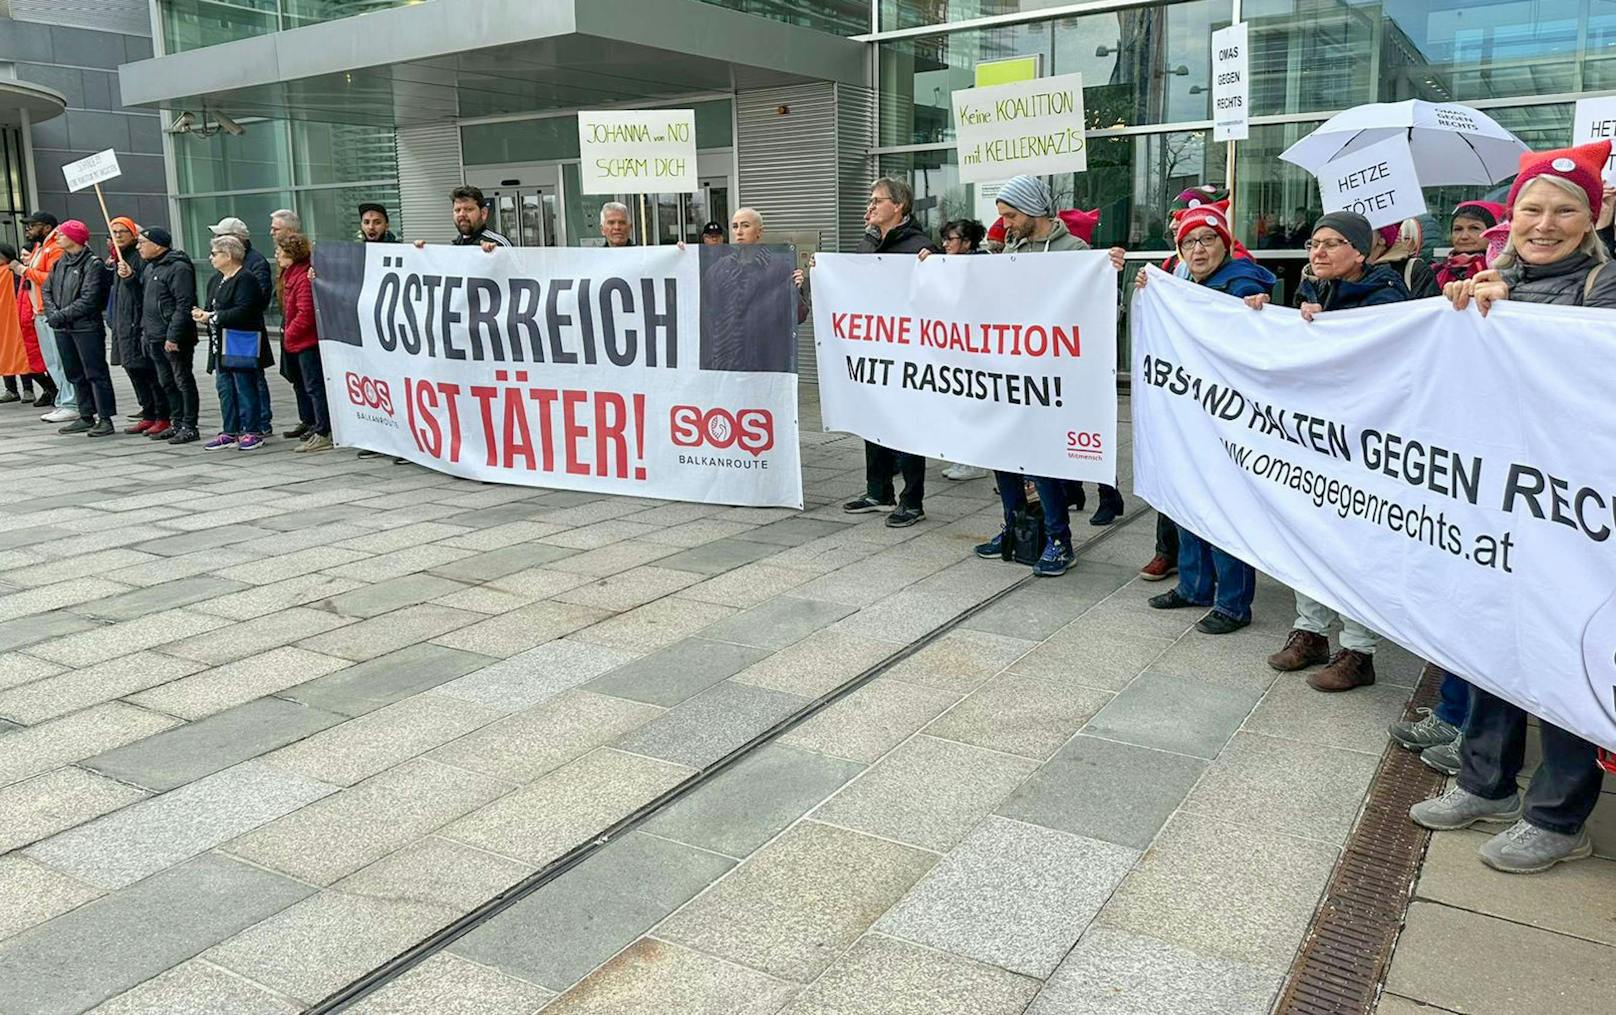 SOS Mitmensch-Teilnehmer mit Banner: "Keine Koalition mit Rassisten!"